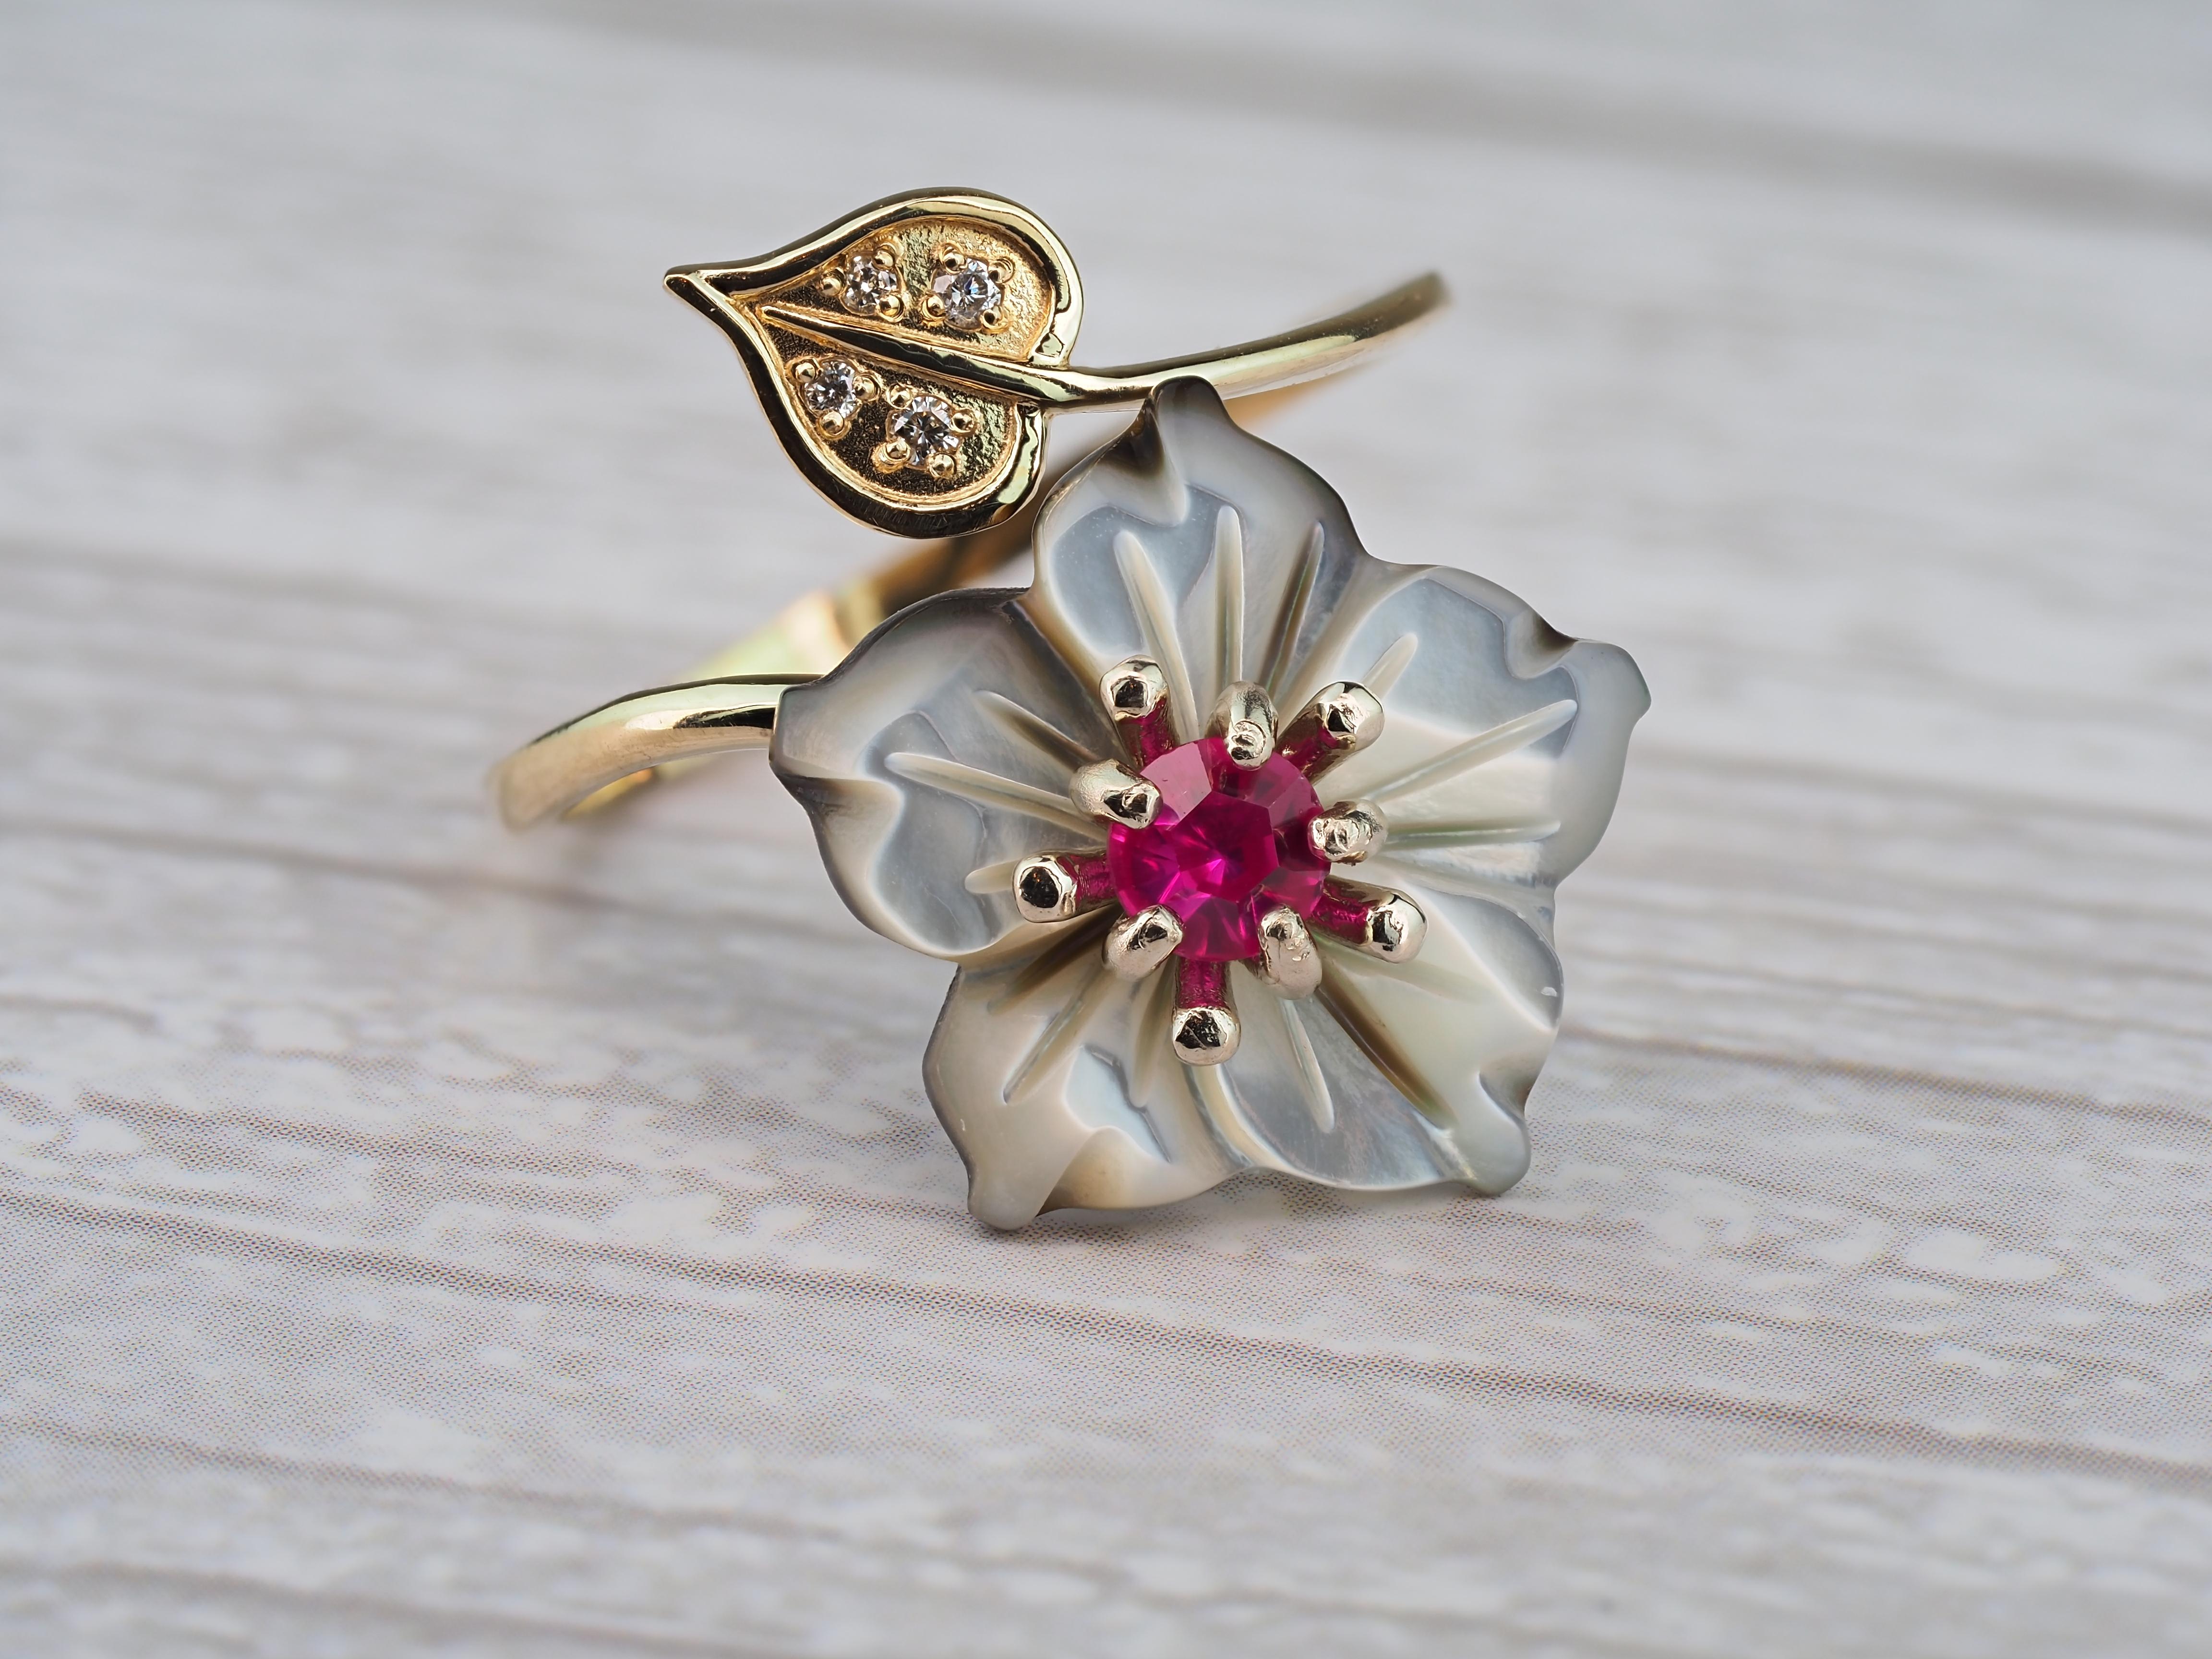 Carved Flower 14k ring with gemstones 3